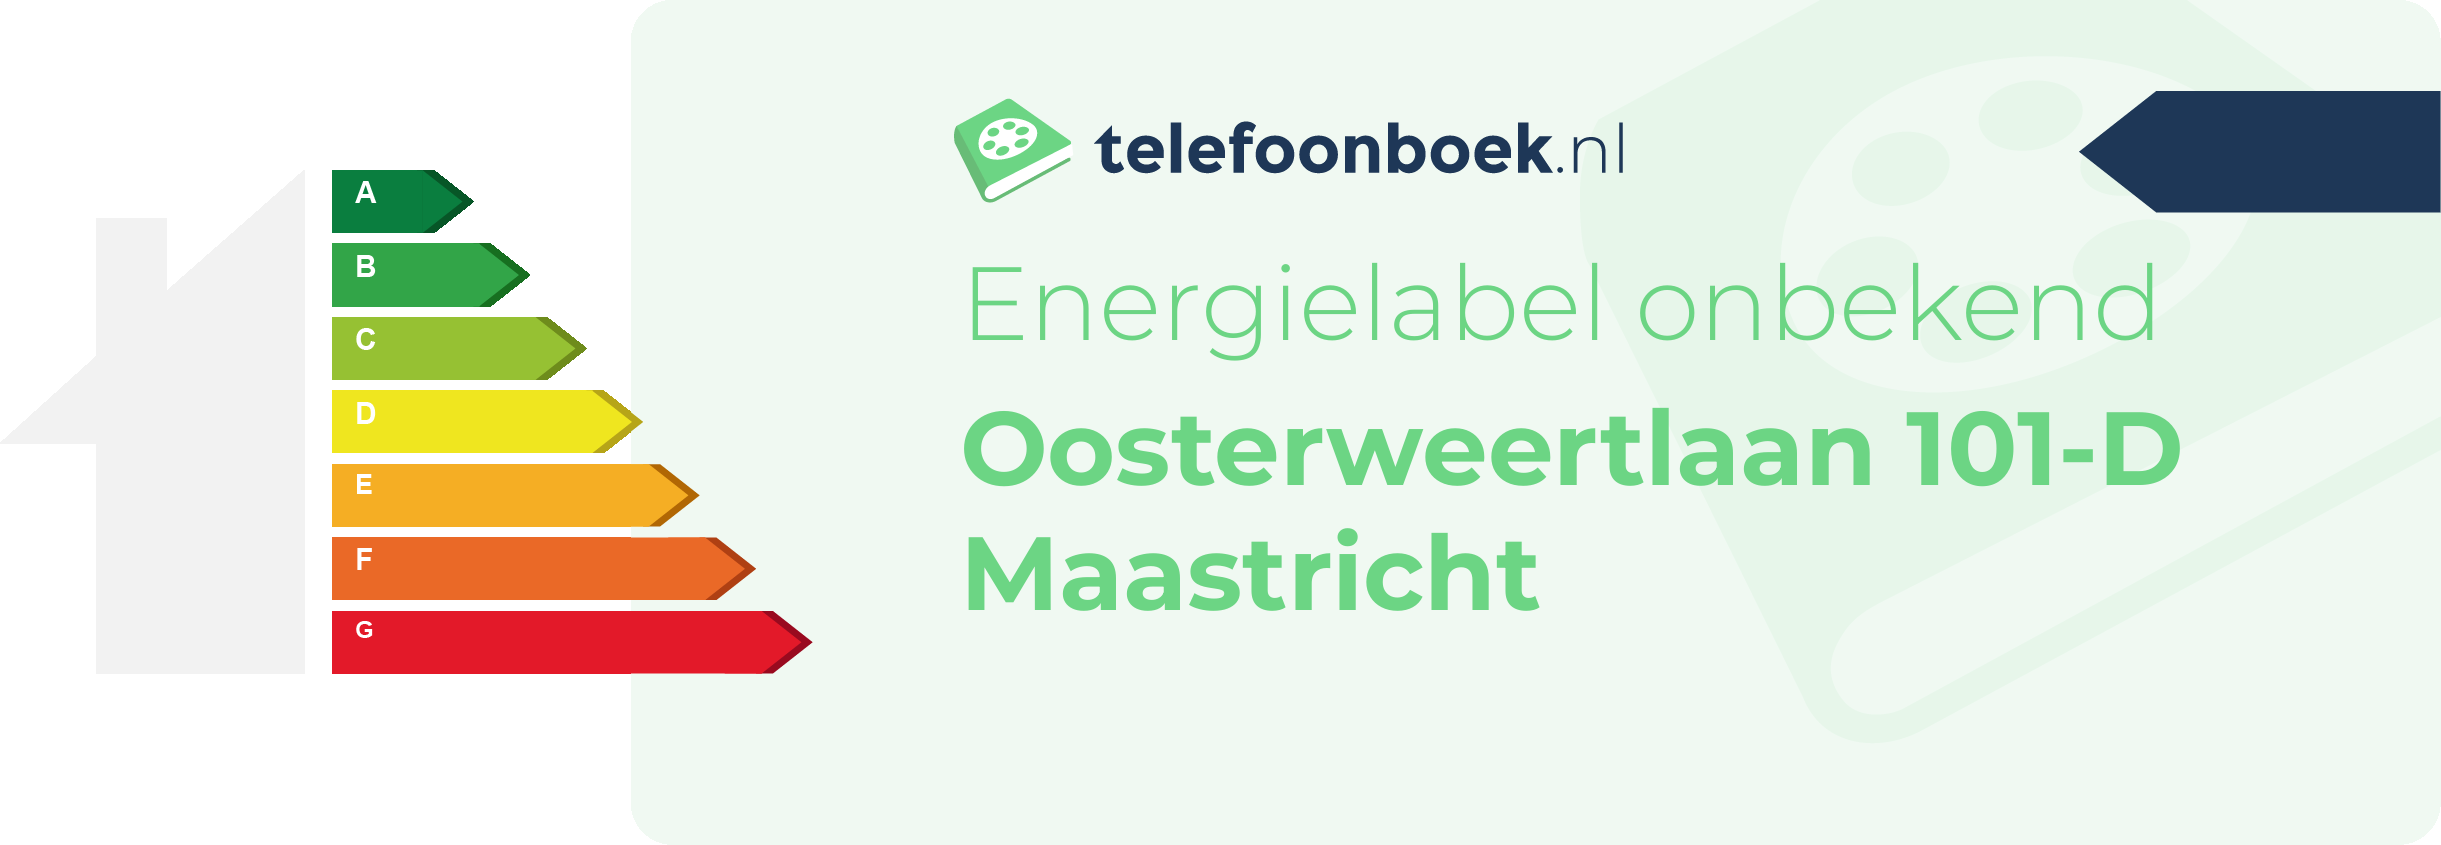 Energielabel Oosterweertlaan 101-D Maastricht